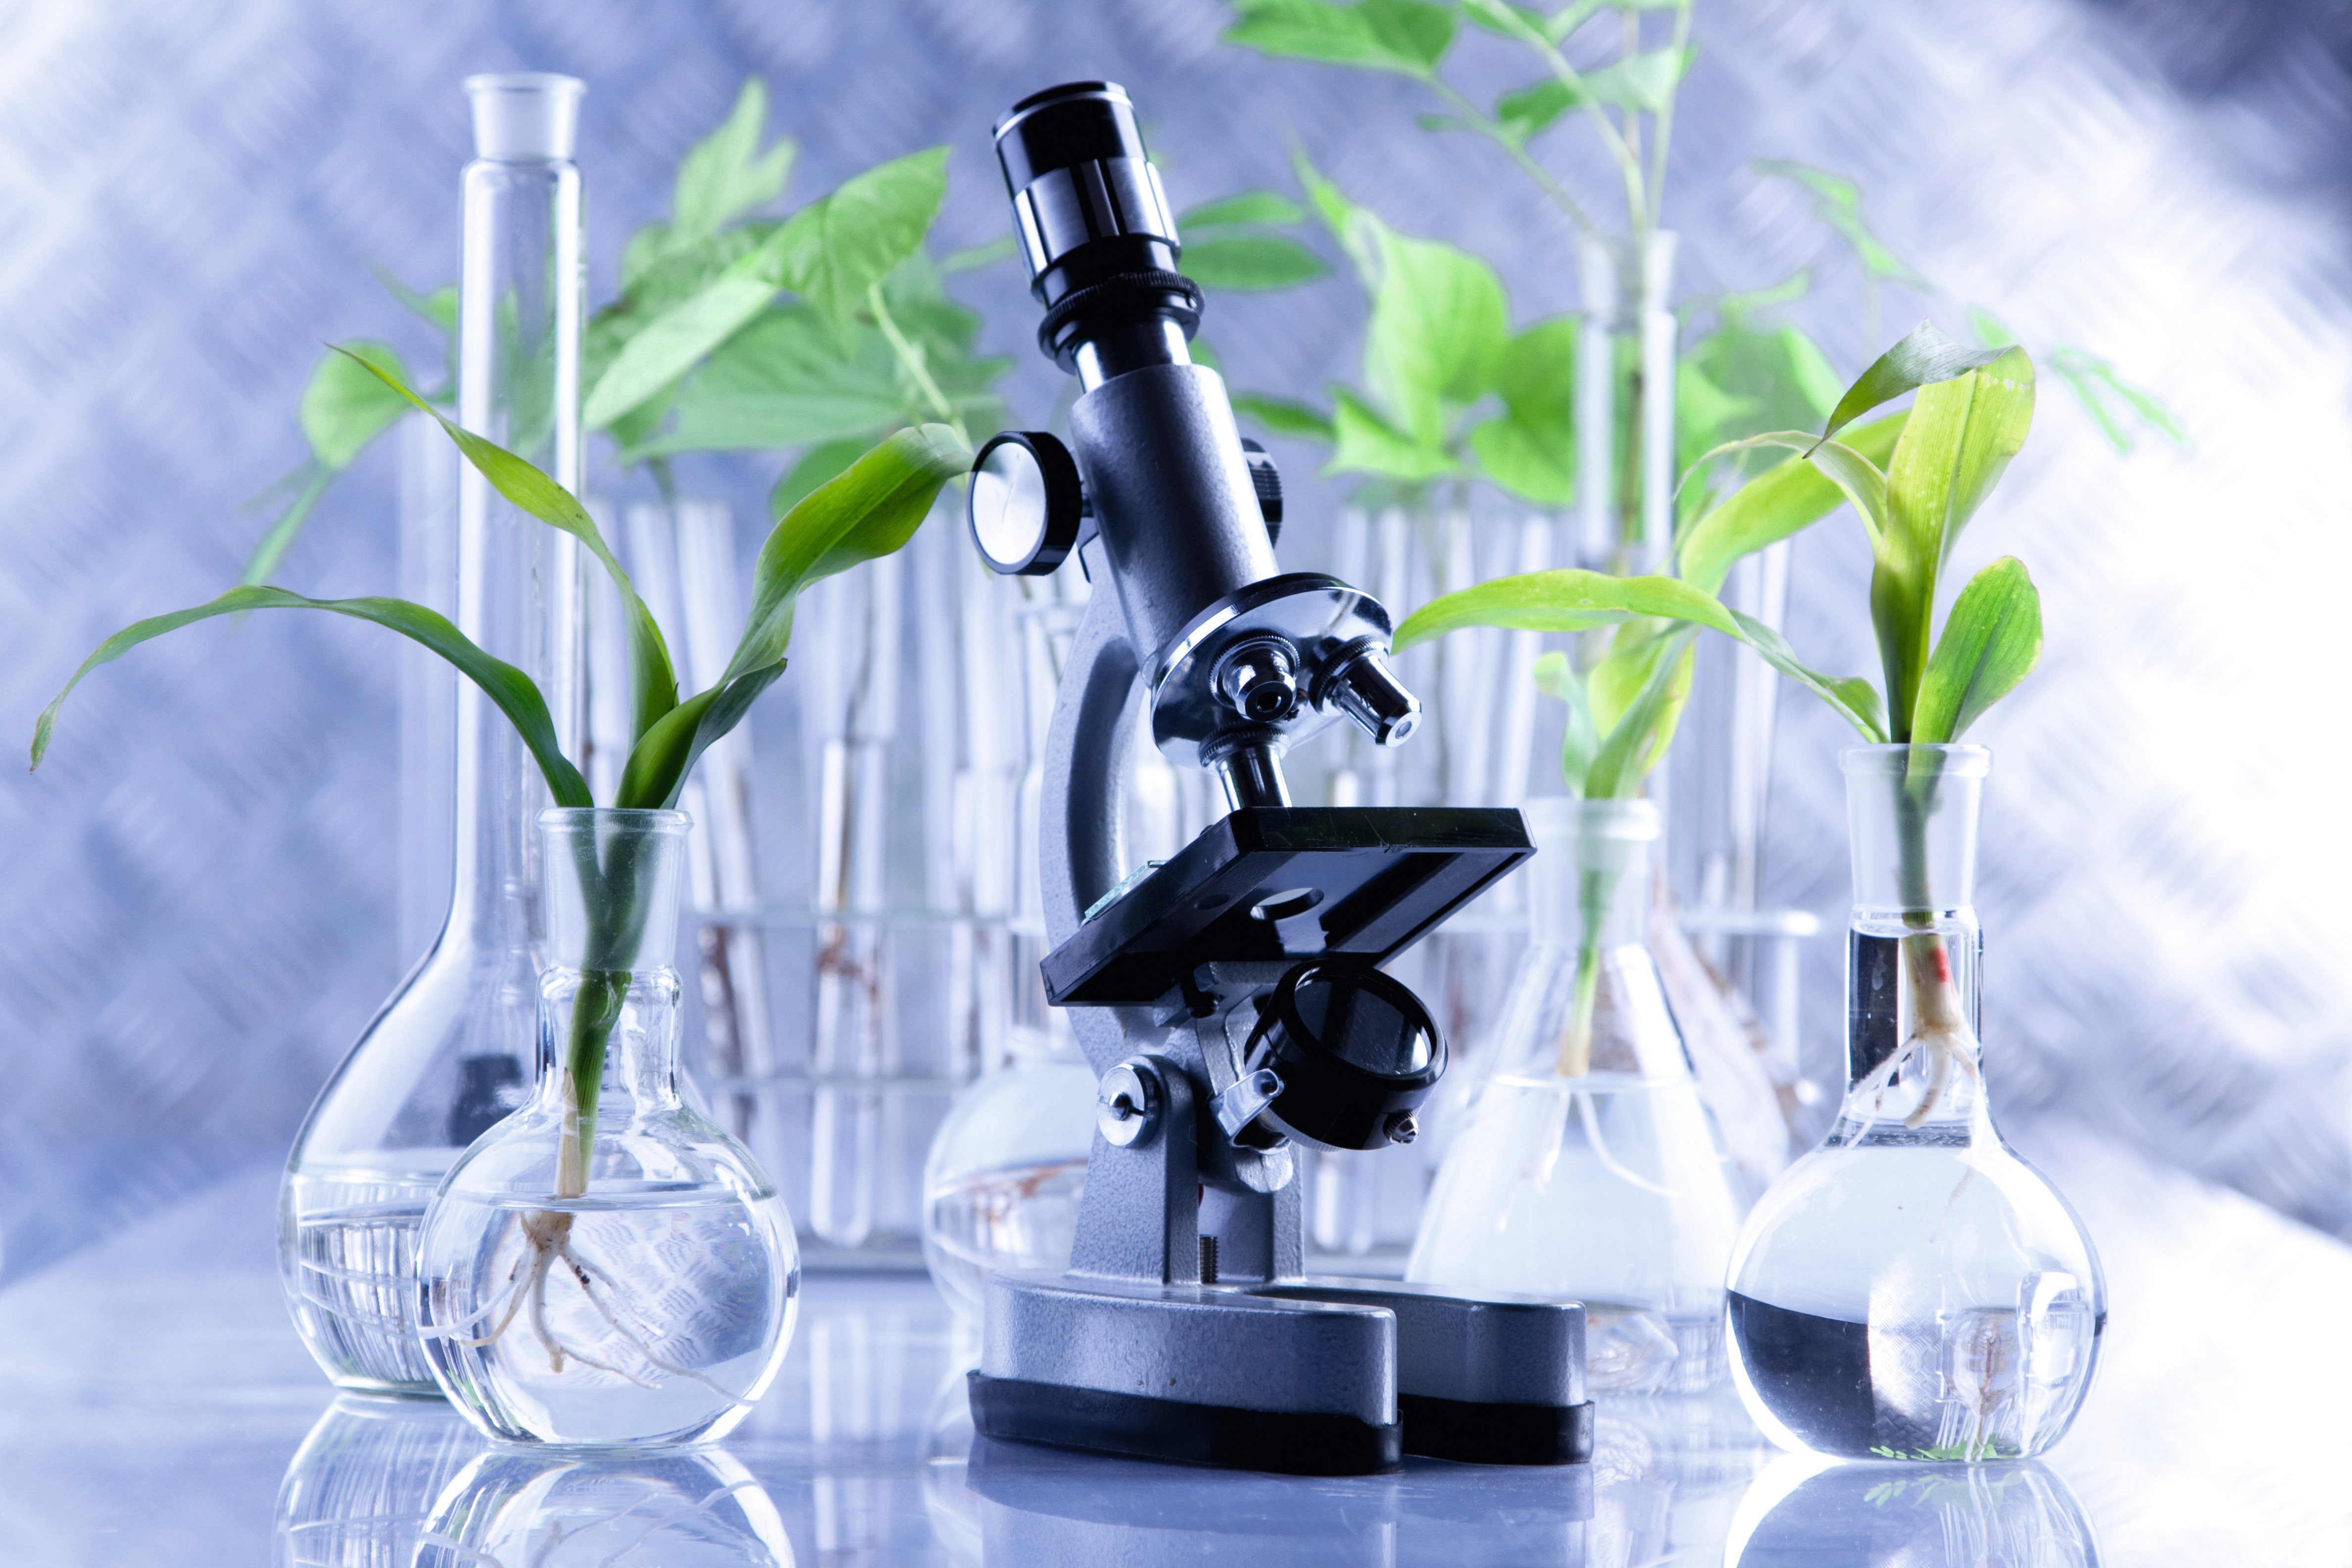 laboratory wallpaper,microscope,scientific instrument,plant,glass,science